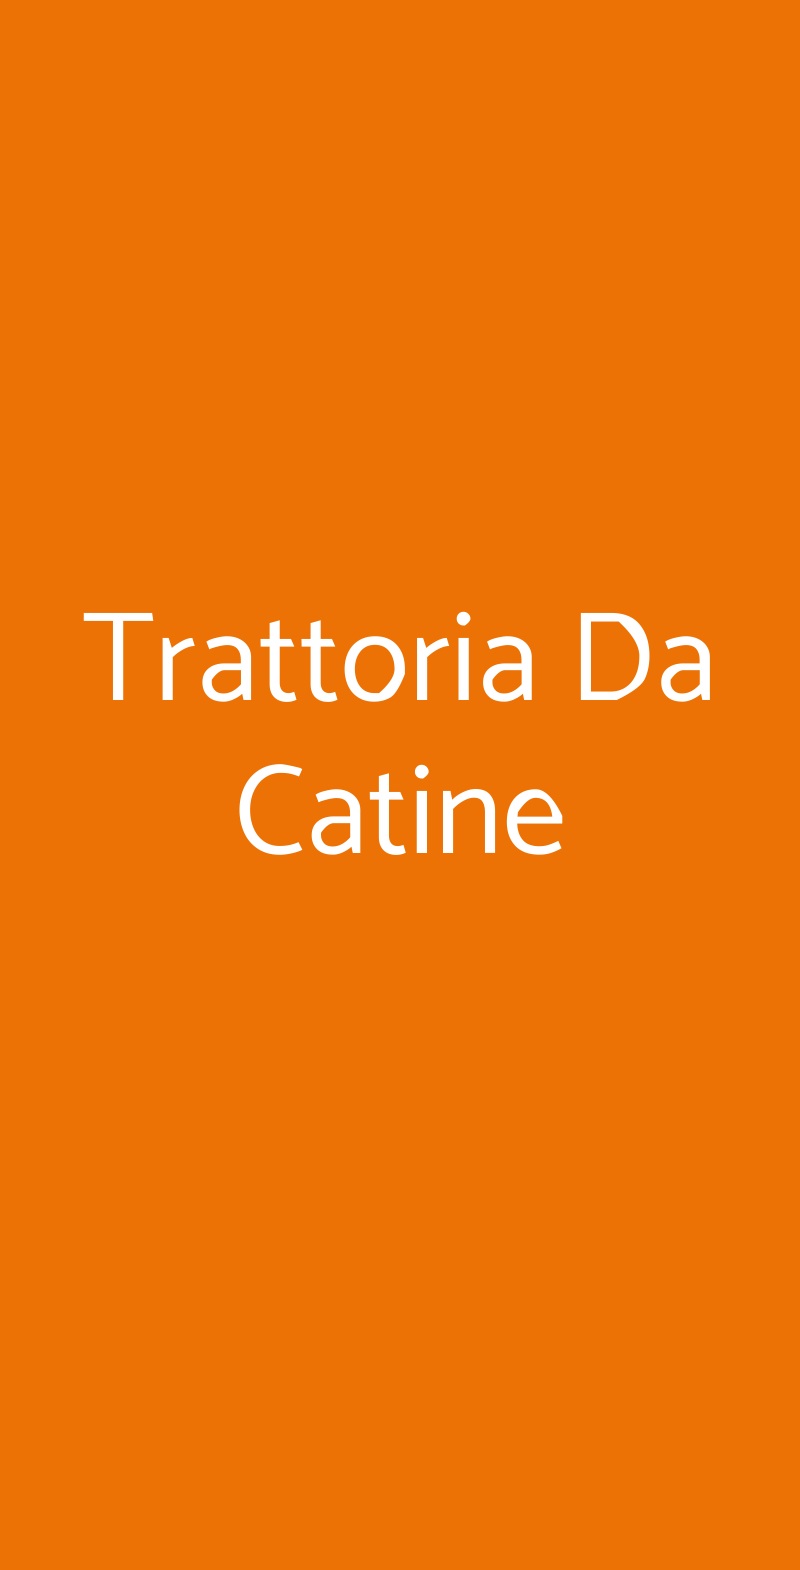 Trattoria Da Catine San Daniele del Friuli menù 1 pagina